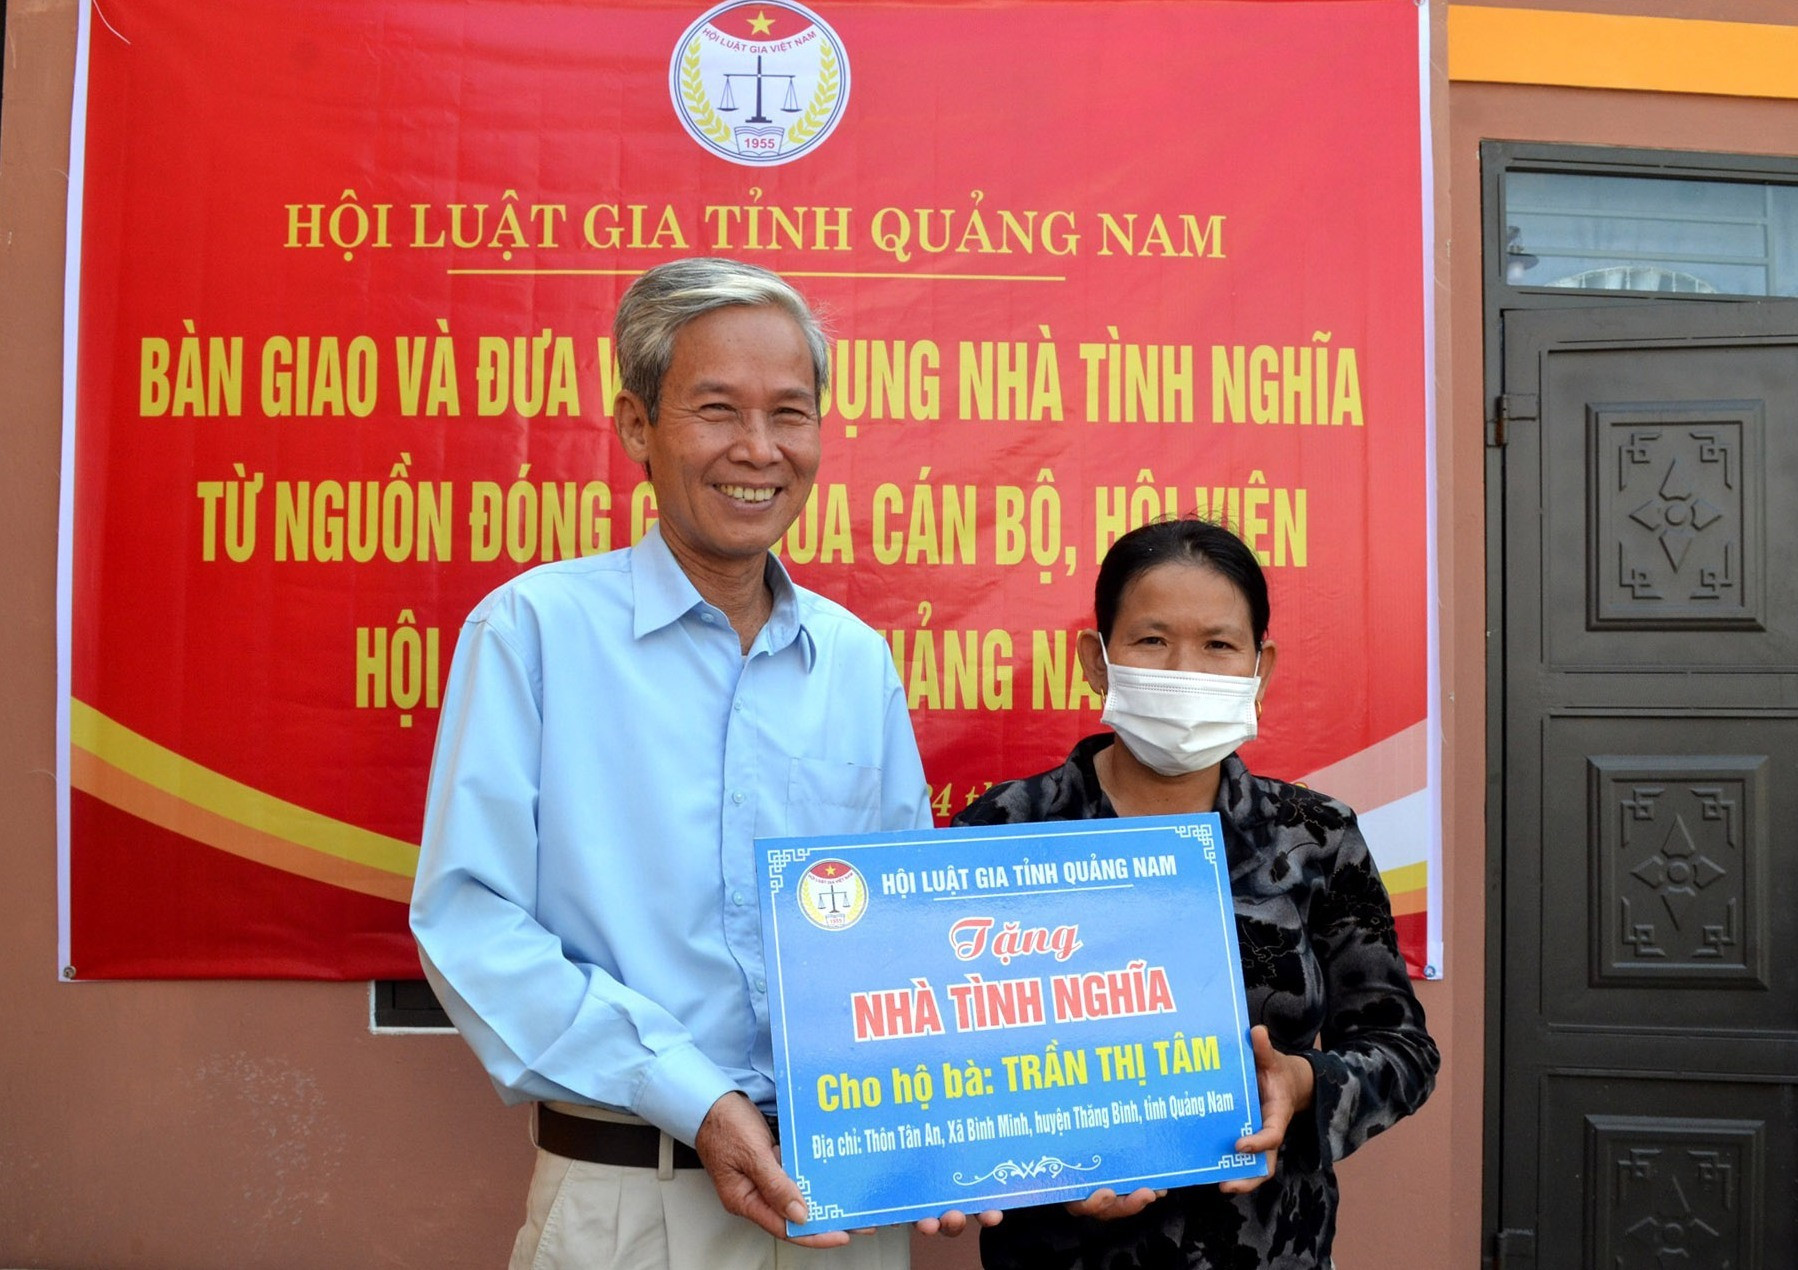 Bà Trần Thị Tâm nhận ngôi nhà tình nghĩa của Hội Luật gia Quảng Nam. Ảnh: Q.VIỆT